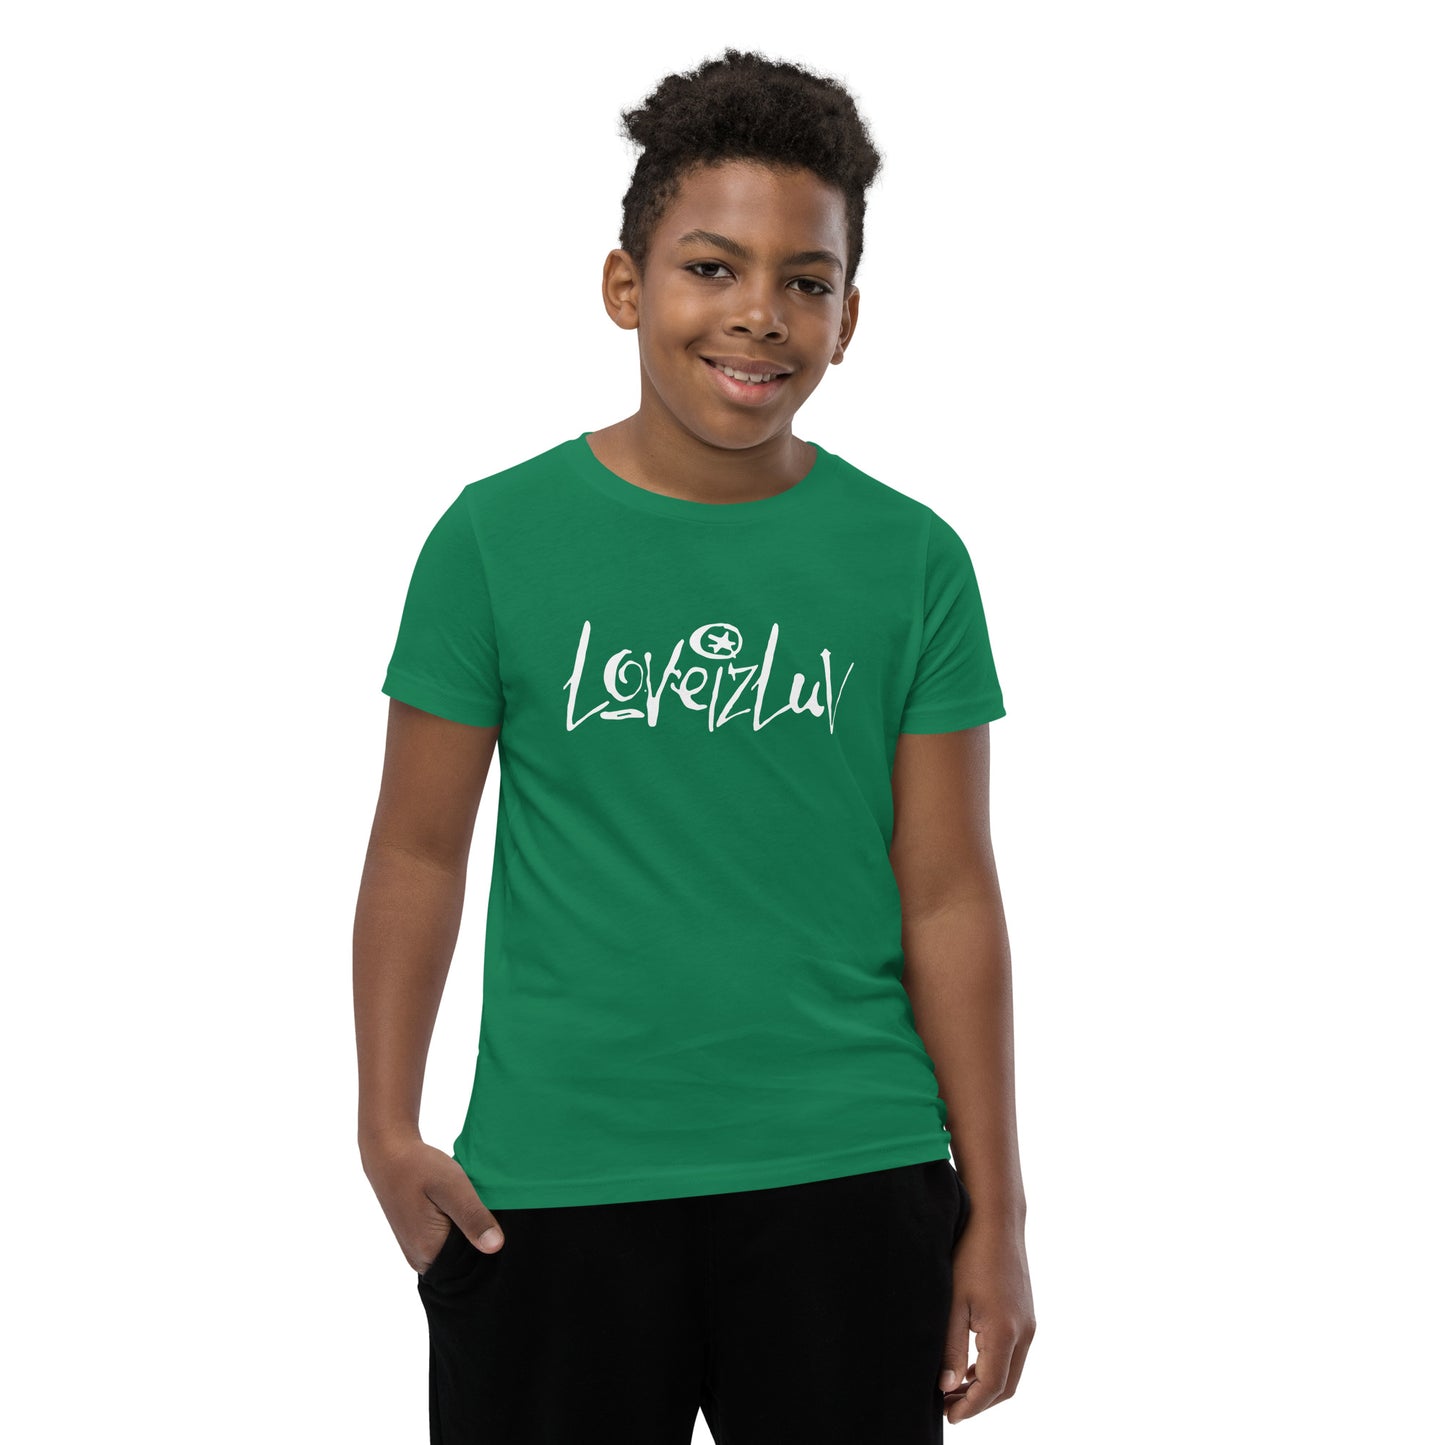 LoveizLuv Youth T-Shirt